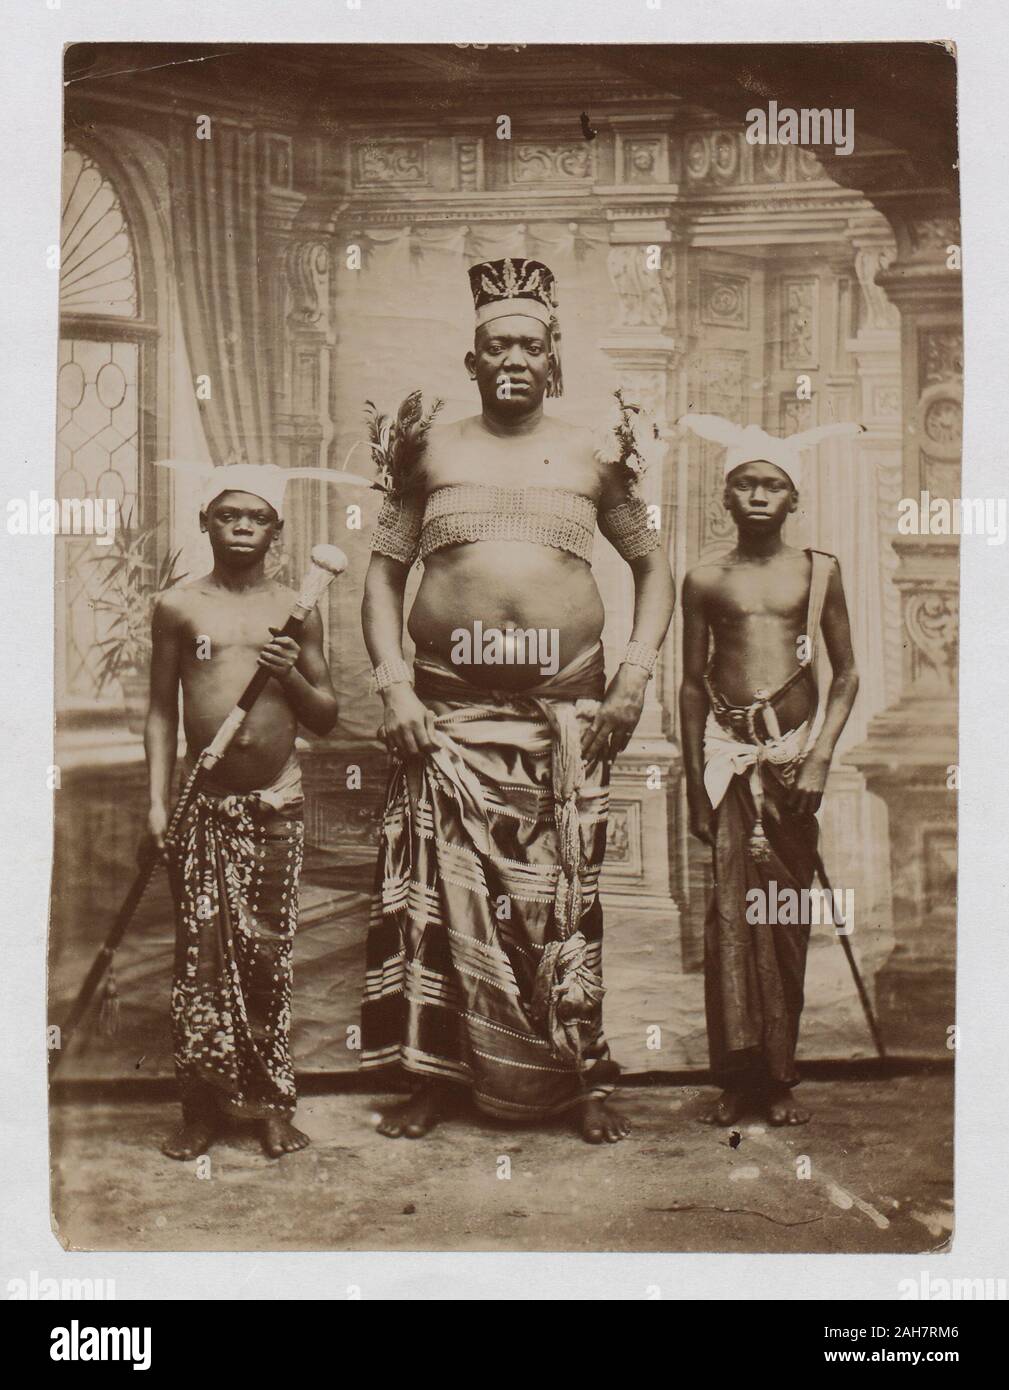 La Nigeria, ritratto del capo con gli operatori presi in studio, [c.1900]. 2003/174/1/38. Foto Stock